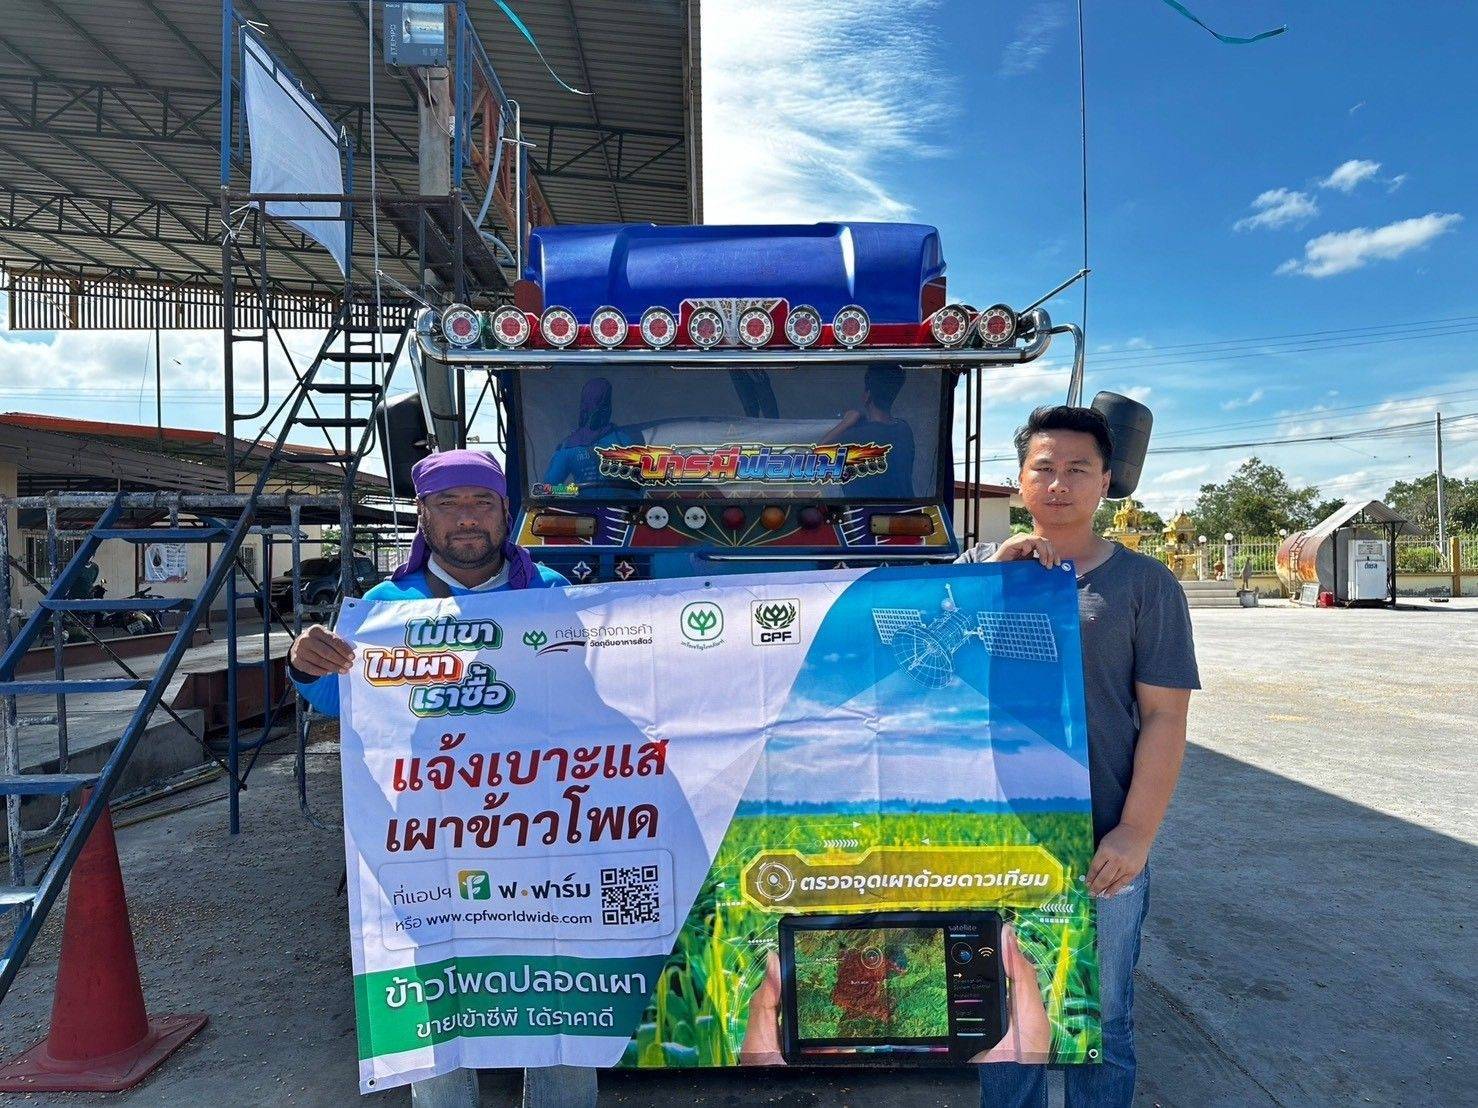 ซีพี “เปิดช่องทางแจ้งเบาะแสเผาข้าวโพด” ชวนคนไทยร่วมยุติการเผาแปลง พิชิตปัญหาฝุ่น PM 2.5  ตามแนวทาง “ไม่เขา ไม่เผา เราซื้อ”